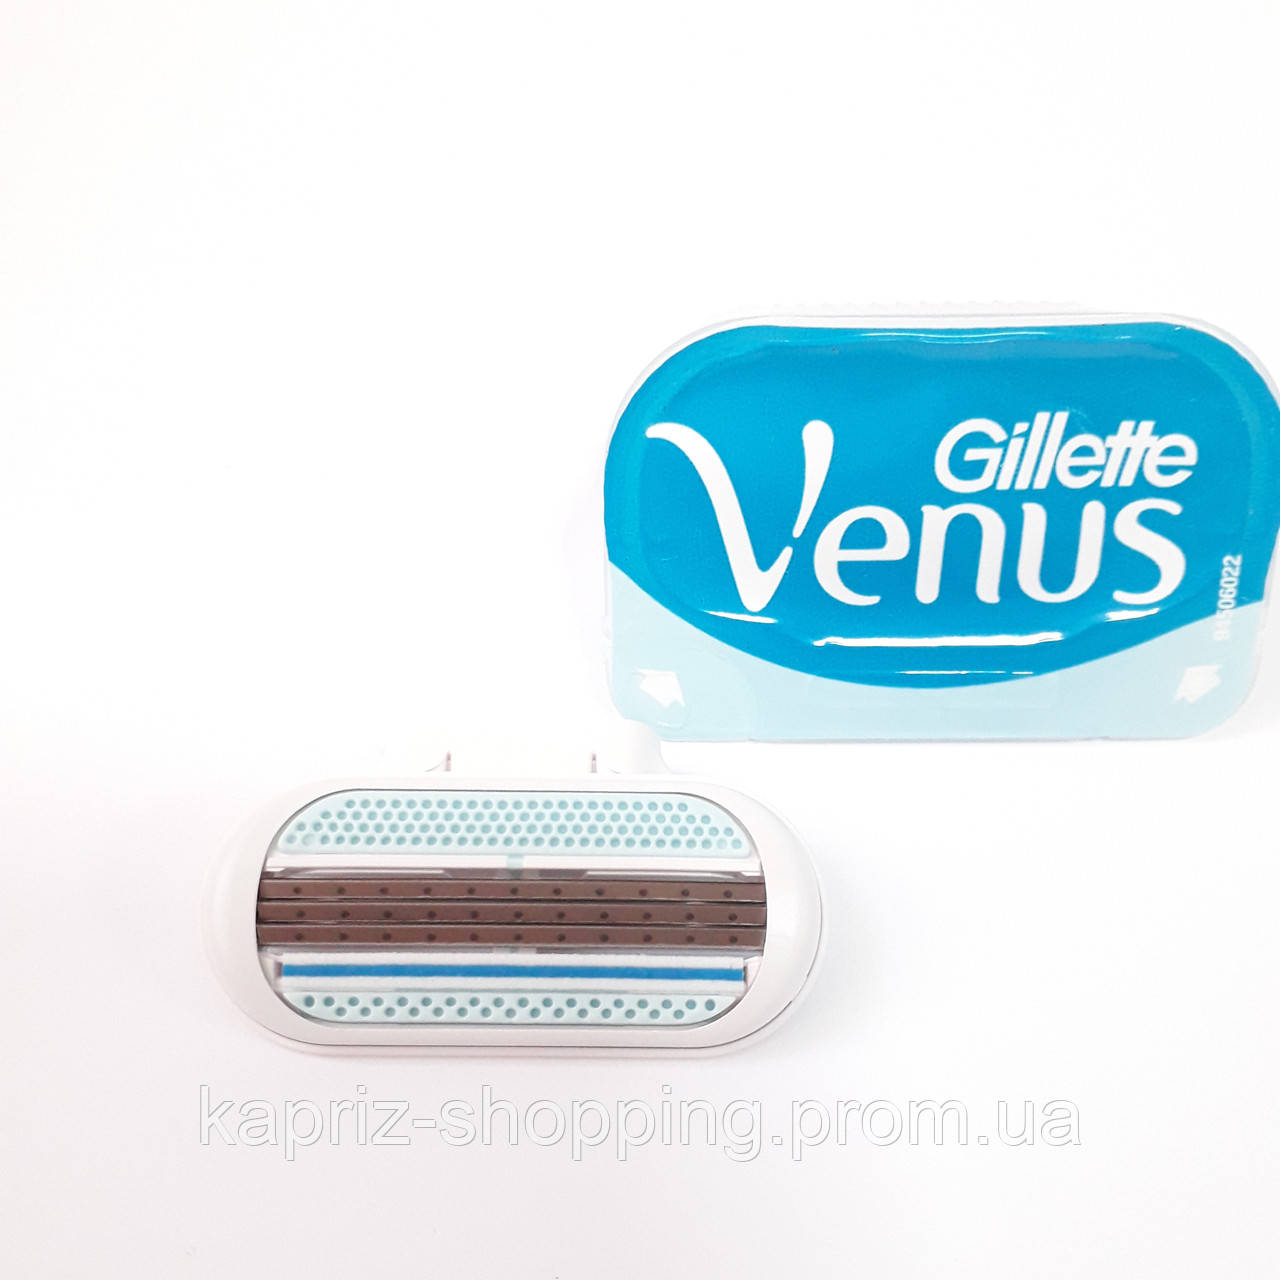 ОТПРАВИМ ДАЖЕ 1шт.  Gillette Venus картридж для гоління 1 шт.